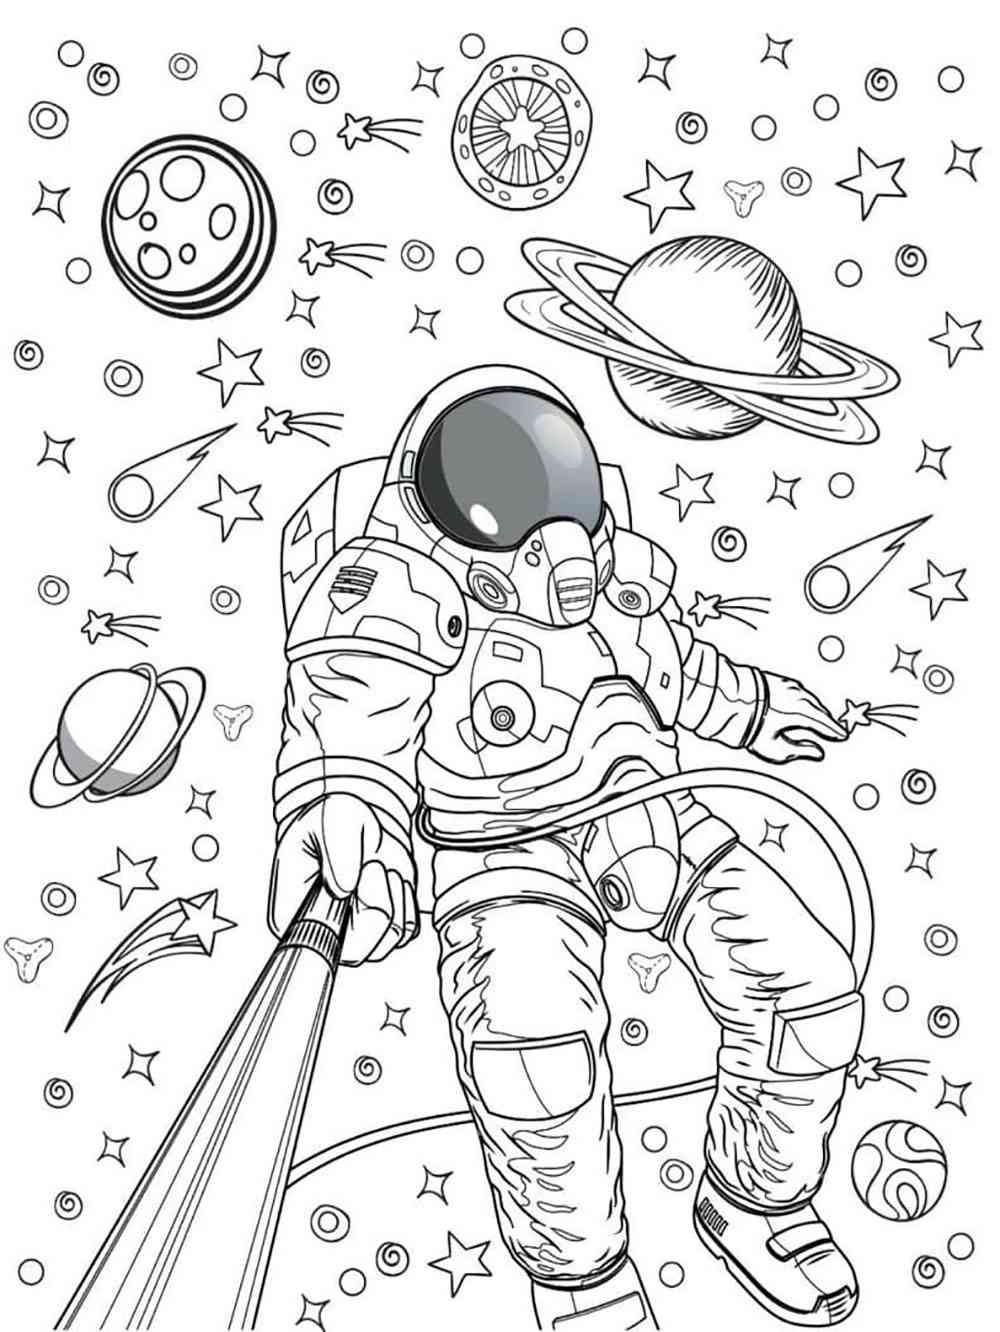 Как разукрасить космонавта. Космос раскраска для детей. Космонавт раскраска для детей. Раскраска. В космосе. Космические раскраски для детей.